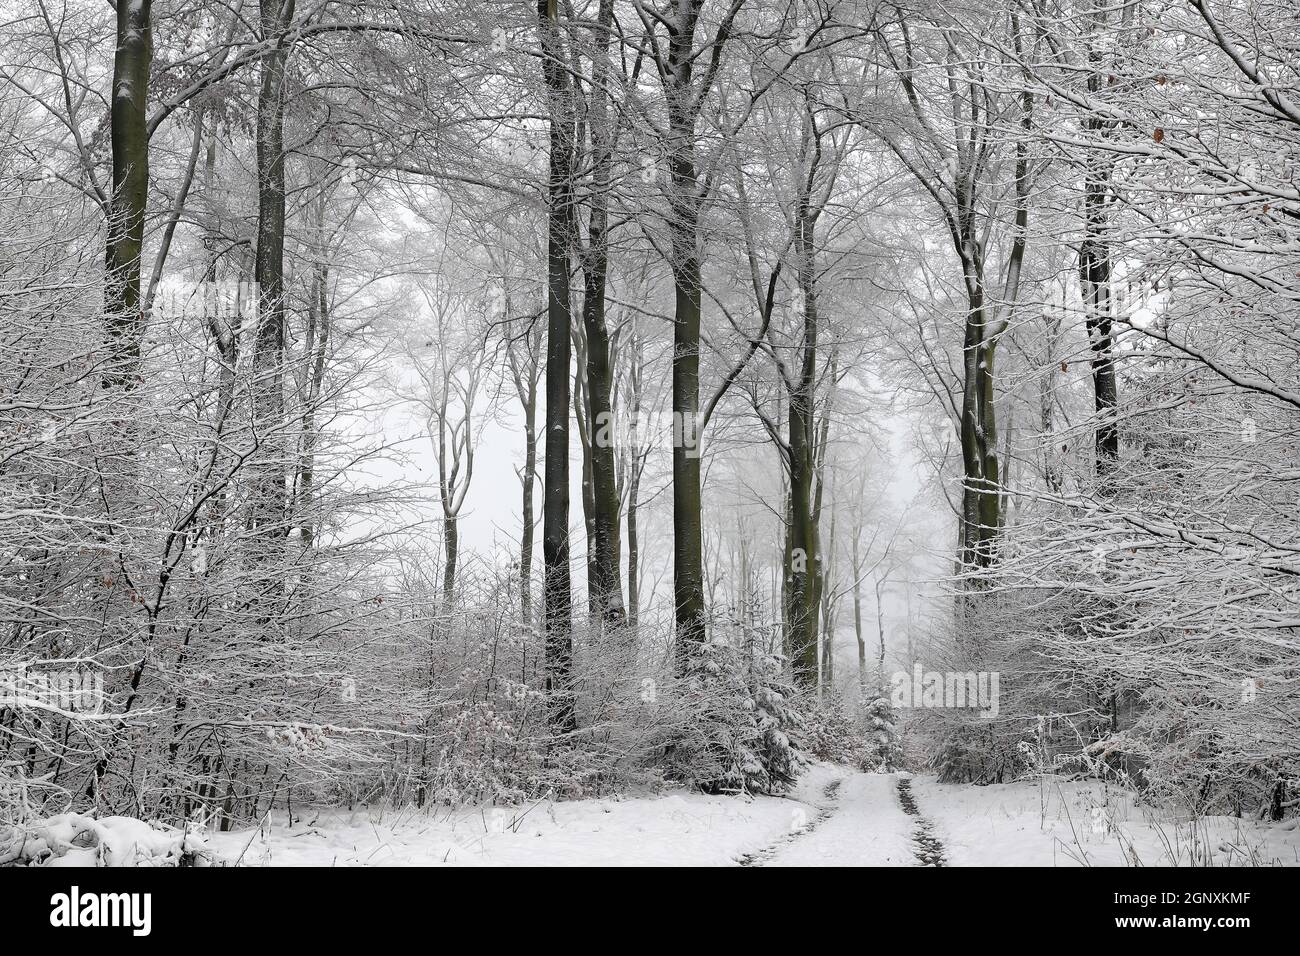 Winterwald im Naturpark Arnsberger Wald auf dem Stimm Stamm, zugeschneiter Winterwald mit tief hängenden verschneiten Ästen und Zweigen. Foto Stock